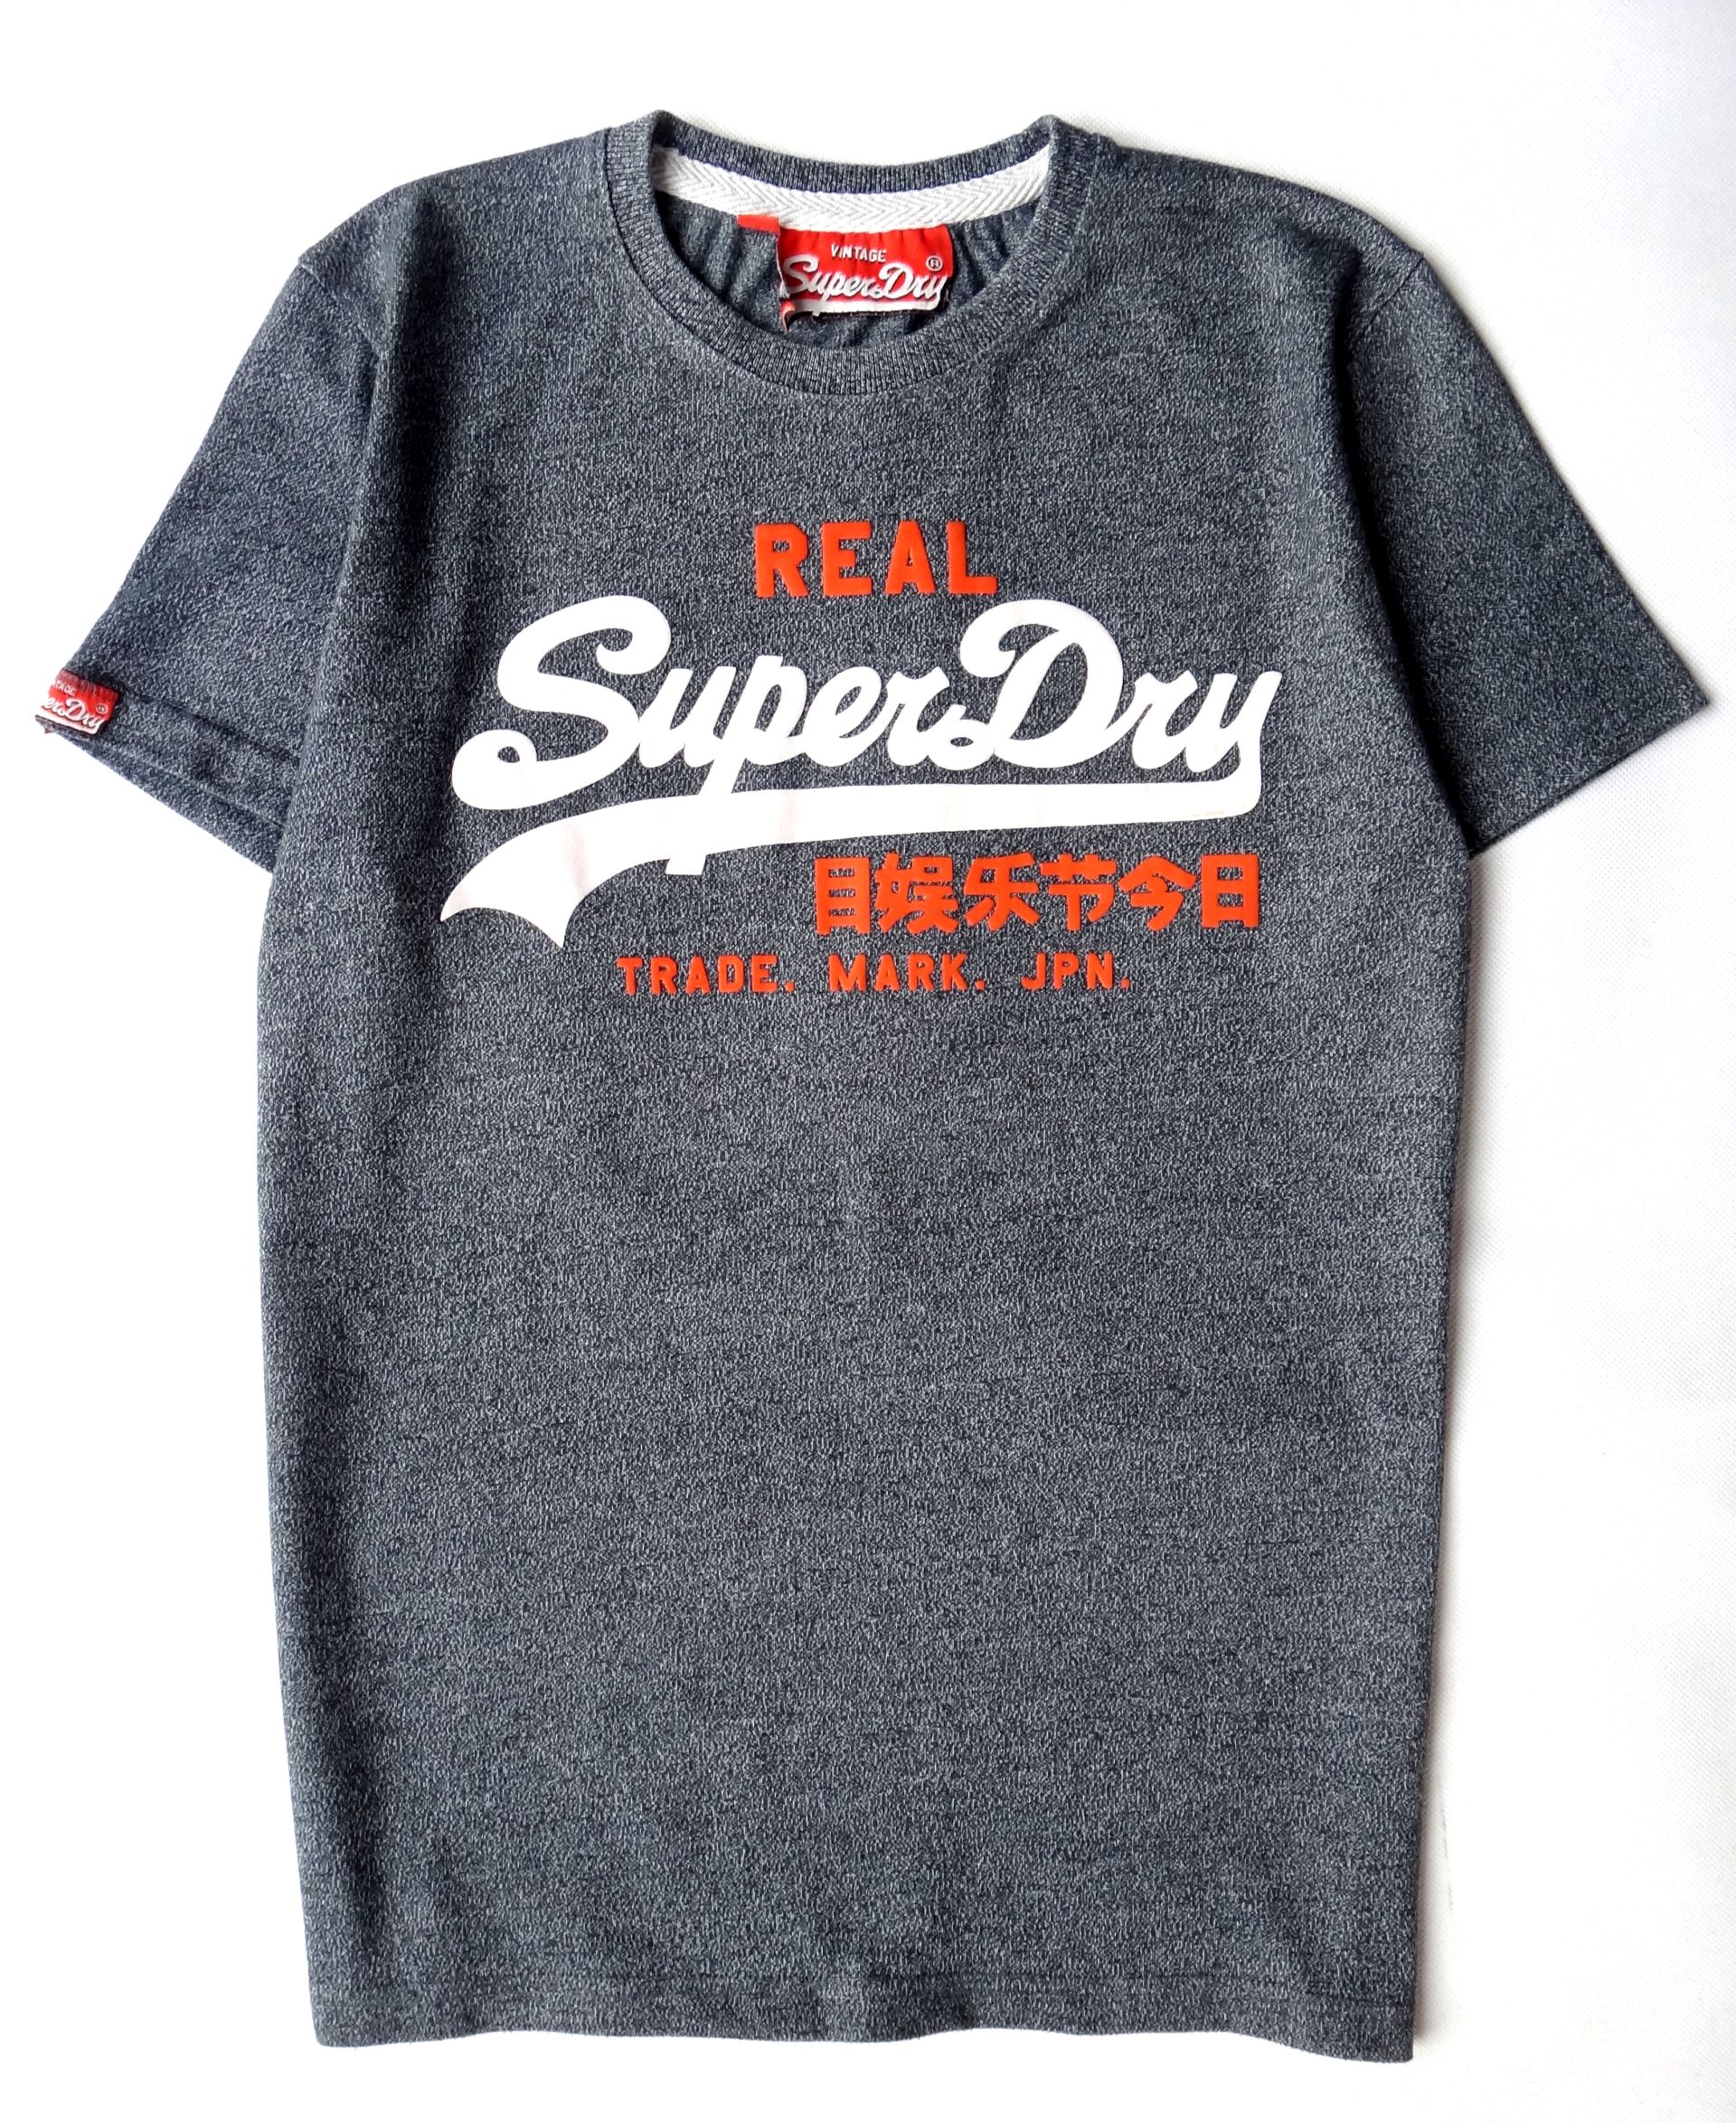 SUPERDRY koszulka męska t-shirt vintage style M